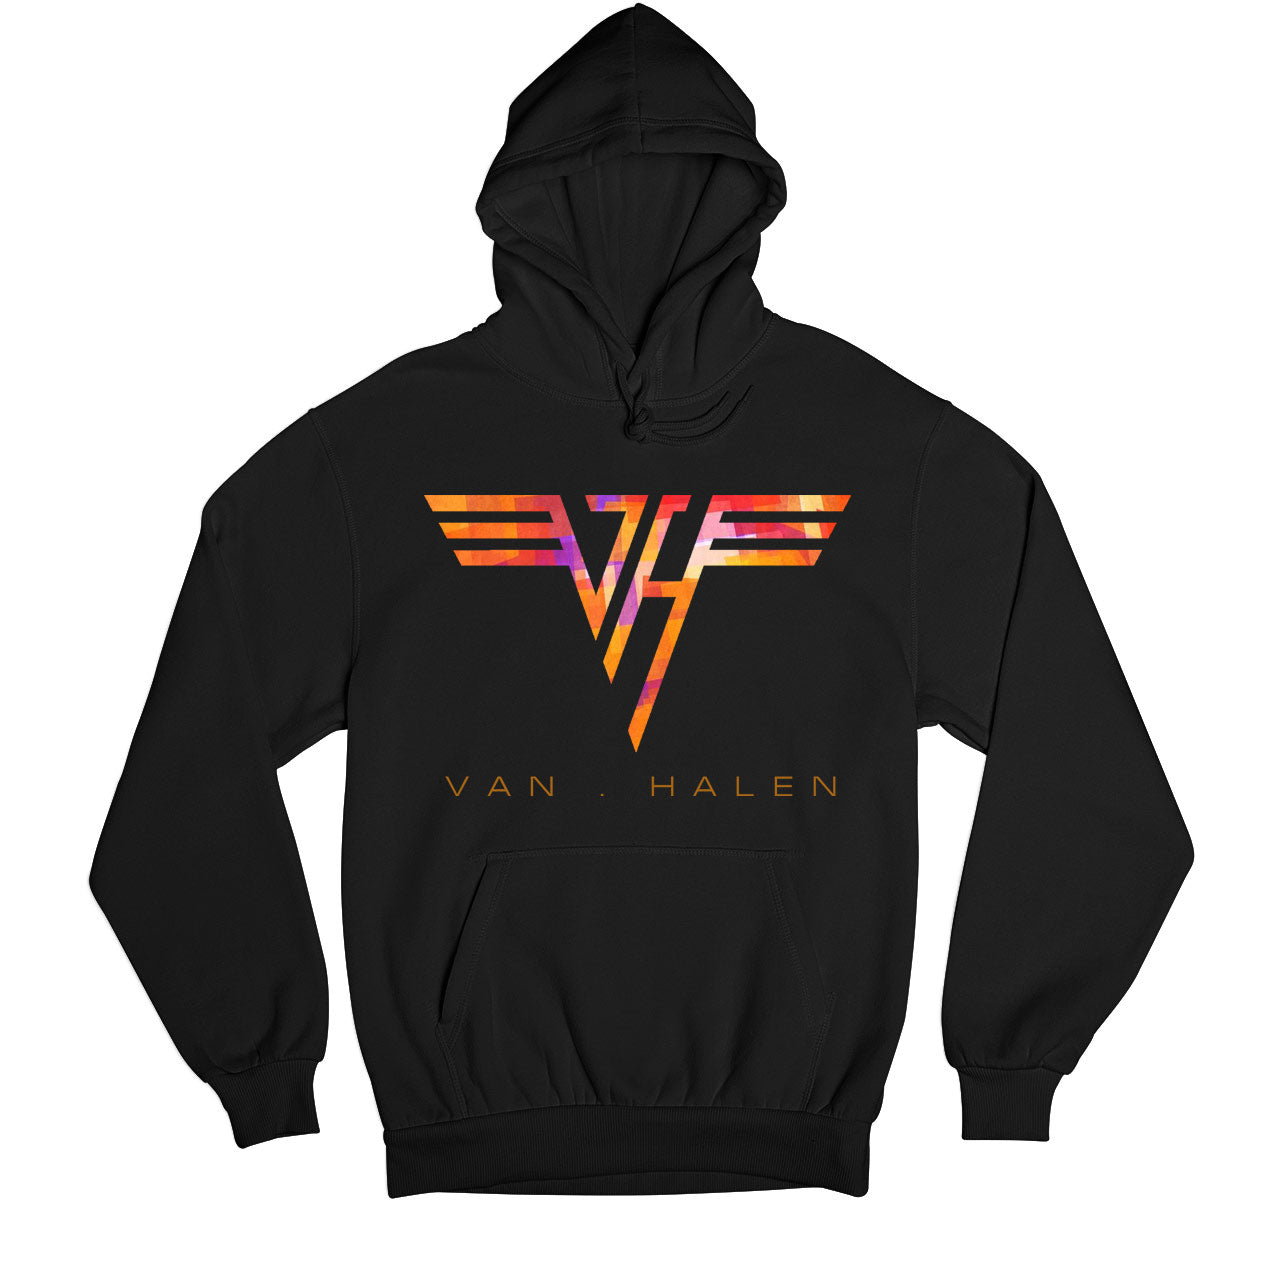 Van Halen Hoodie - On Sale - S (Chest size 40 IN)